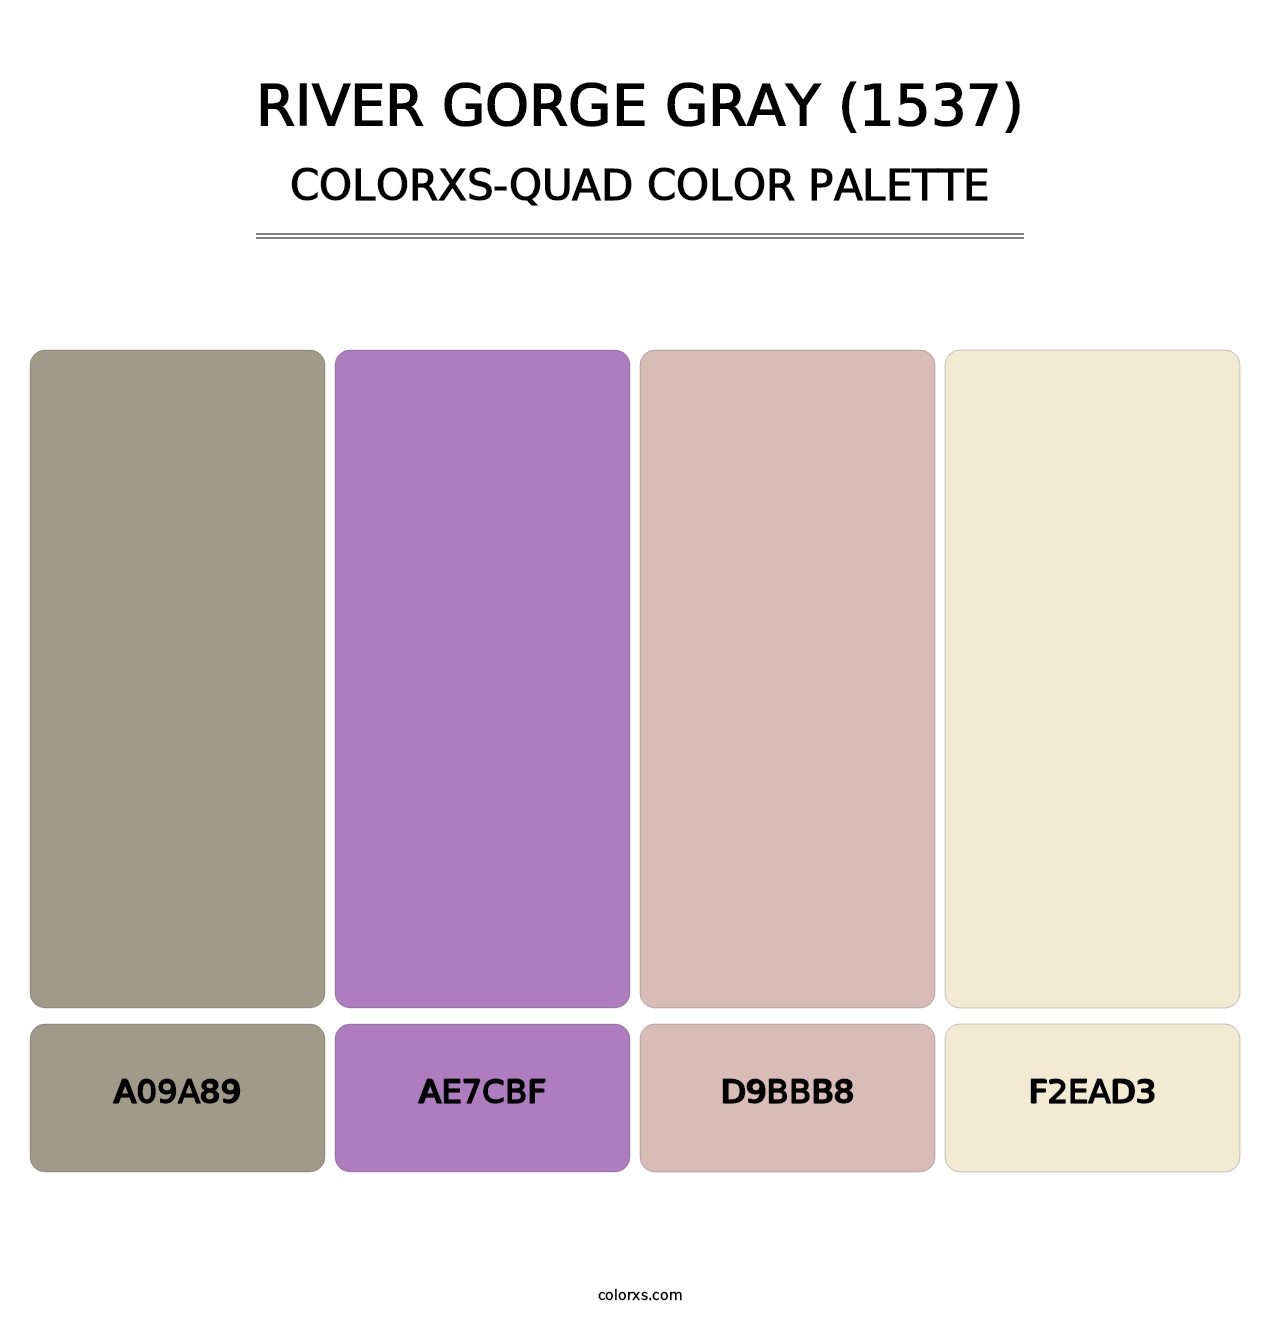 River Gorge Gray (1537) - Colorxs Quad Palette